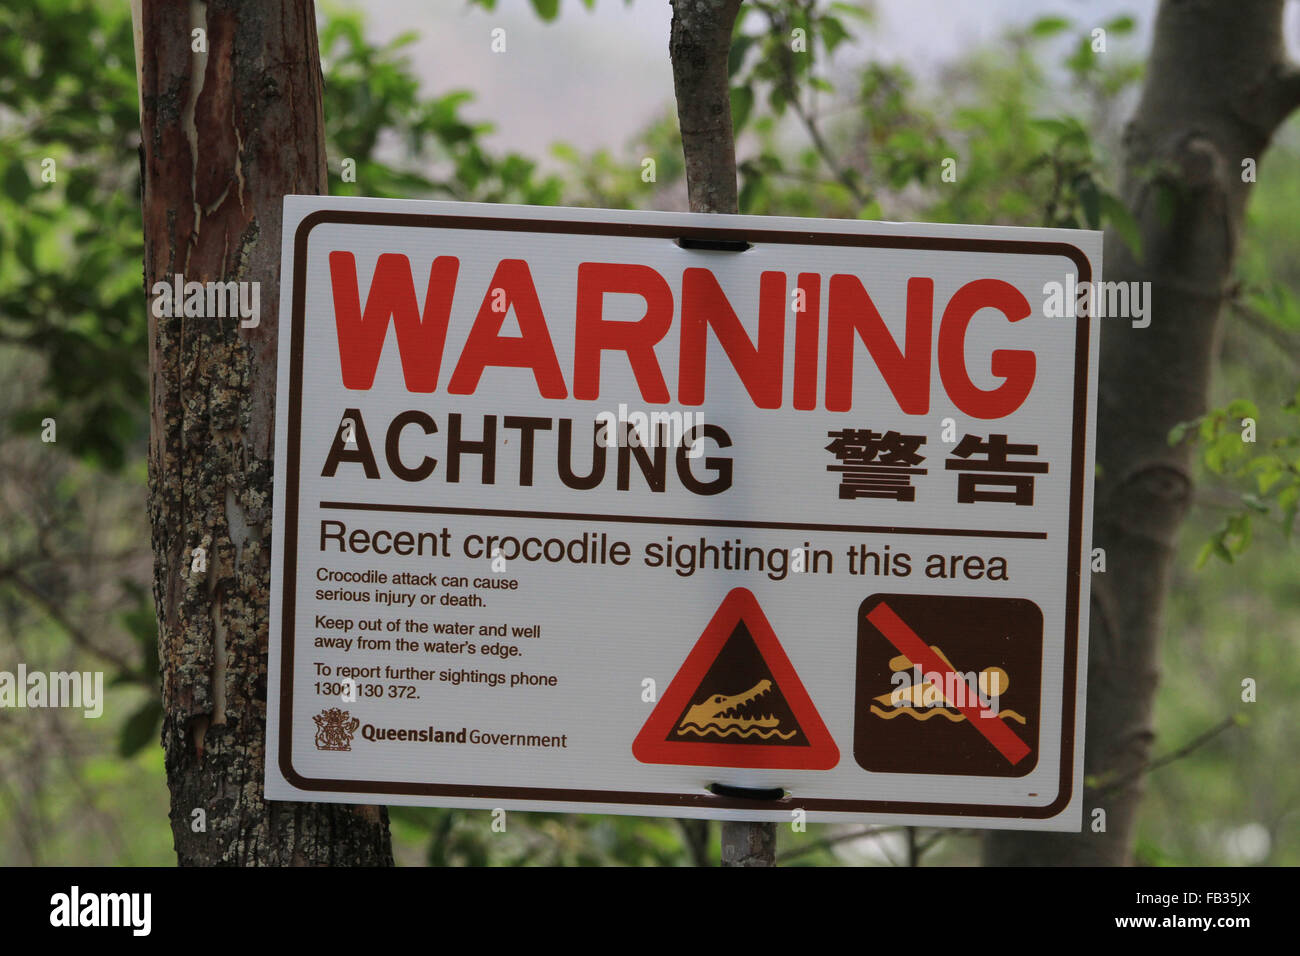 Crocodile warning sign, Townsville, Australia Stock Photo